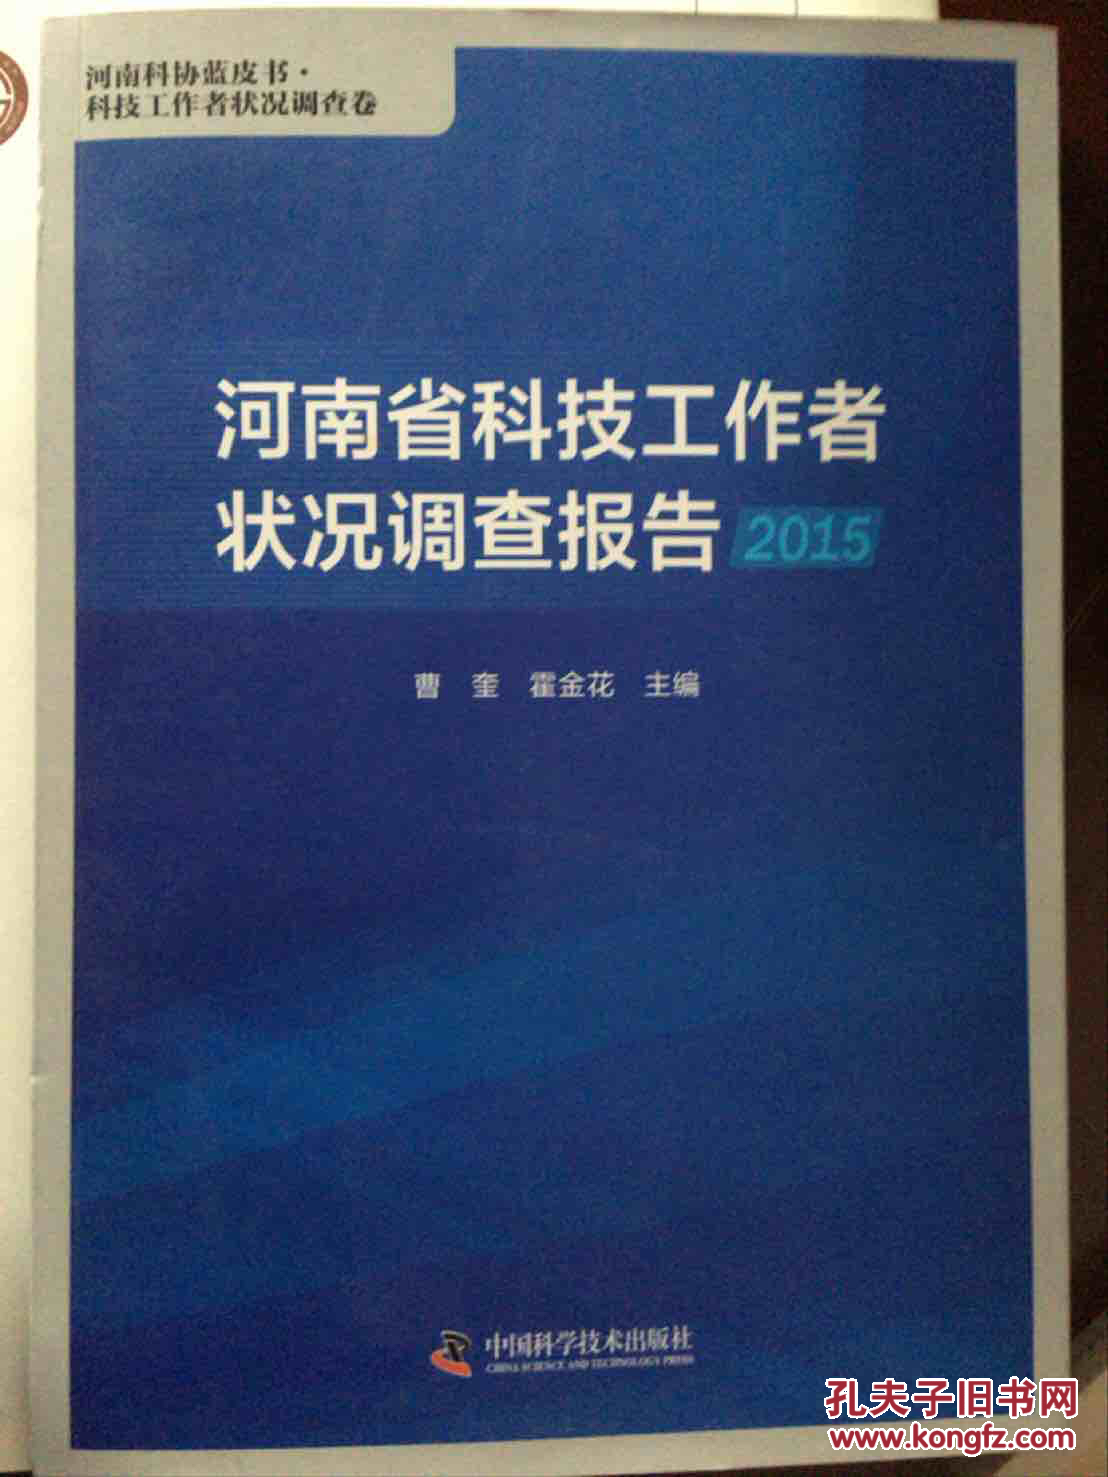 河南省科技工作者状况调查报告2015